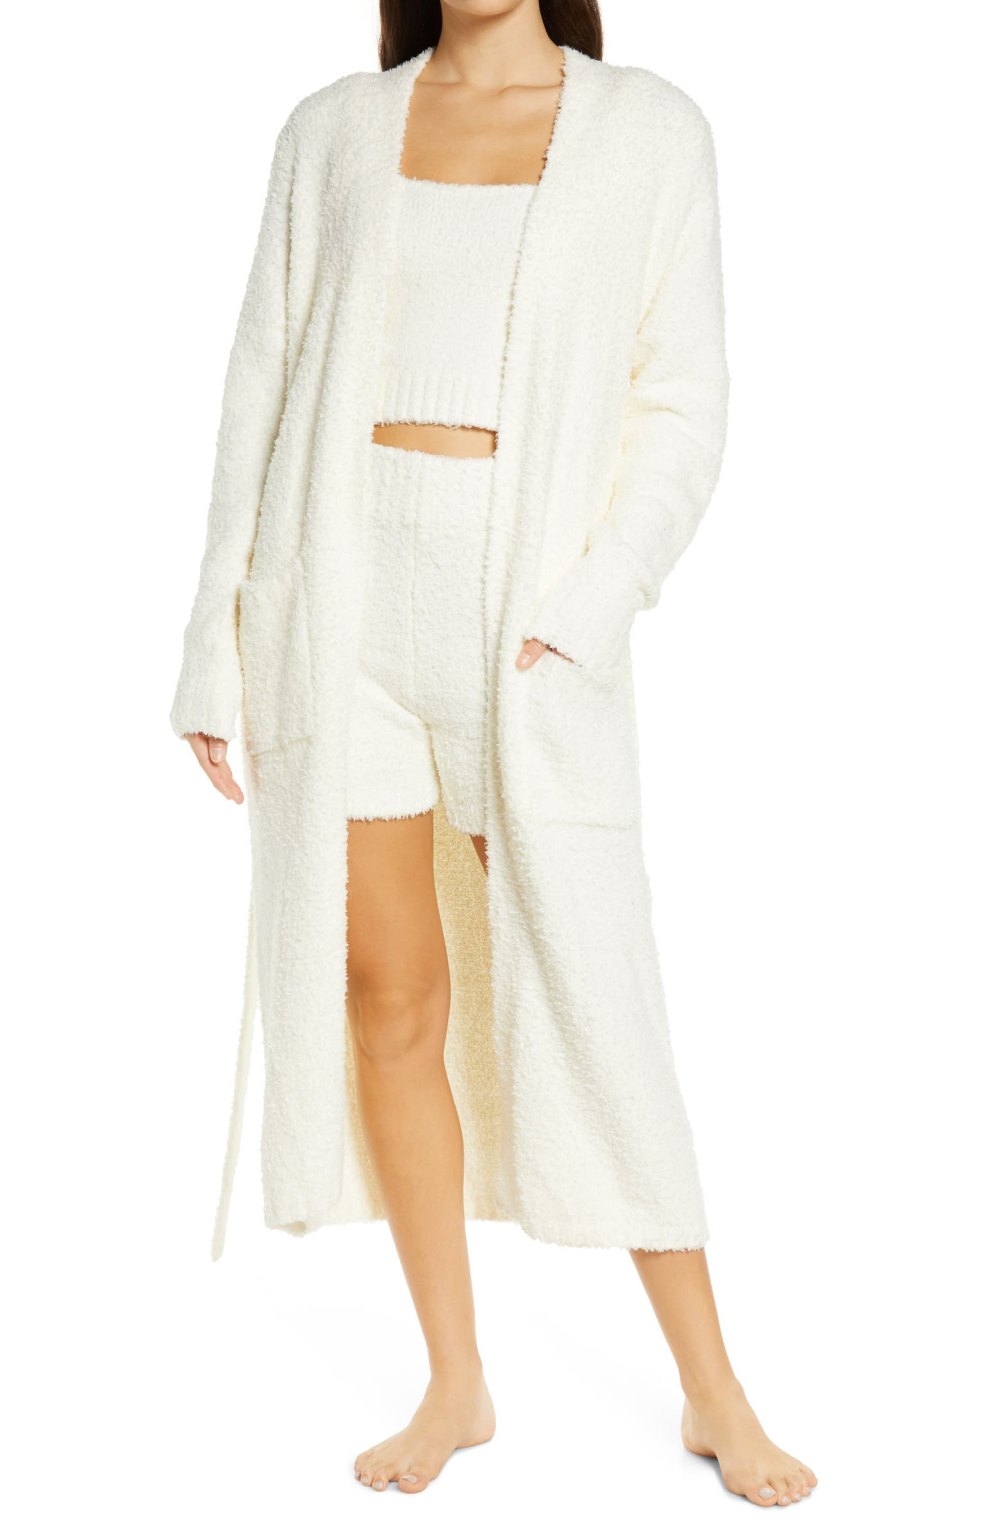 Skims, robe, cozy collection, Kim Kardashian